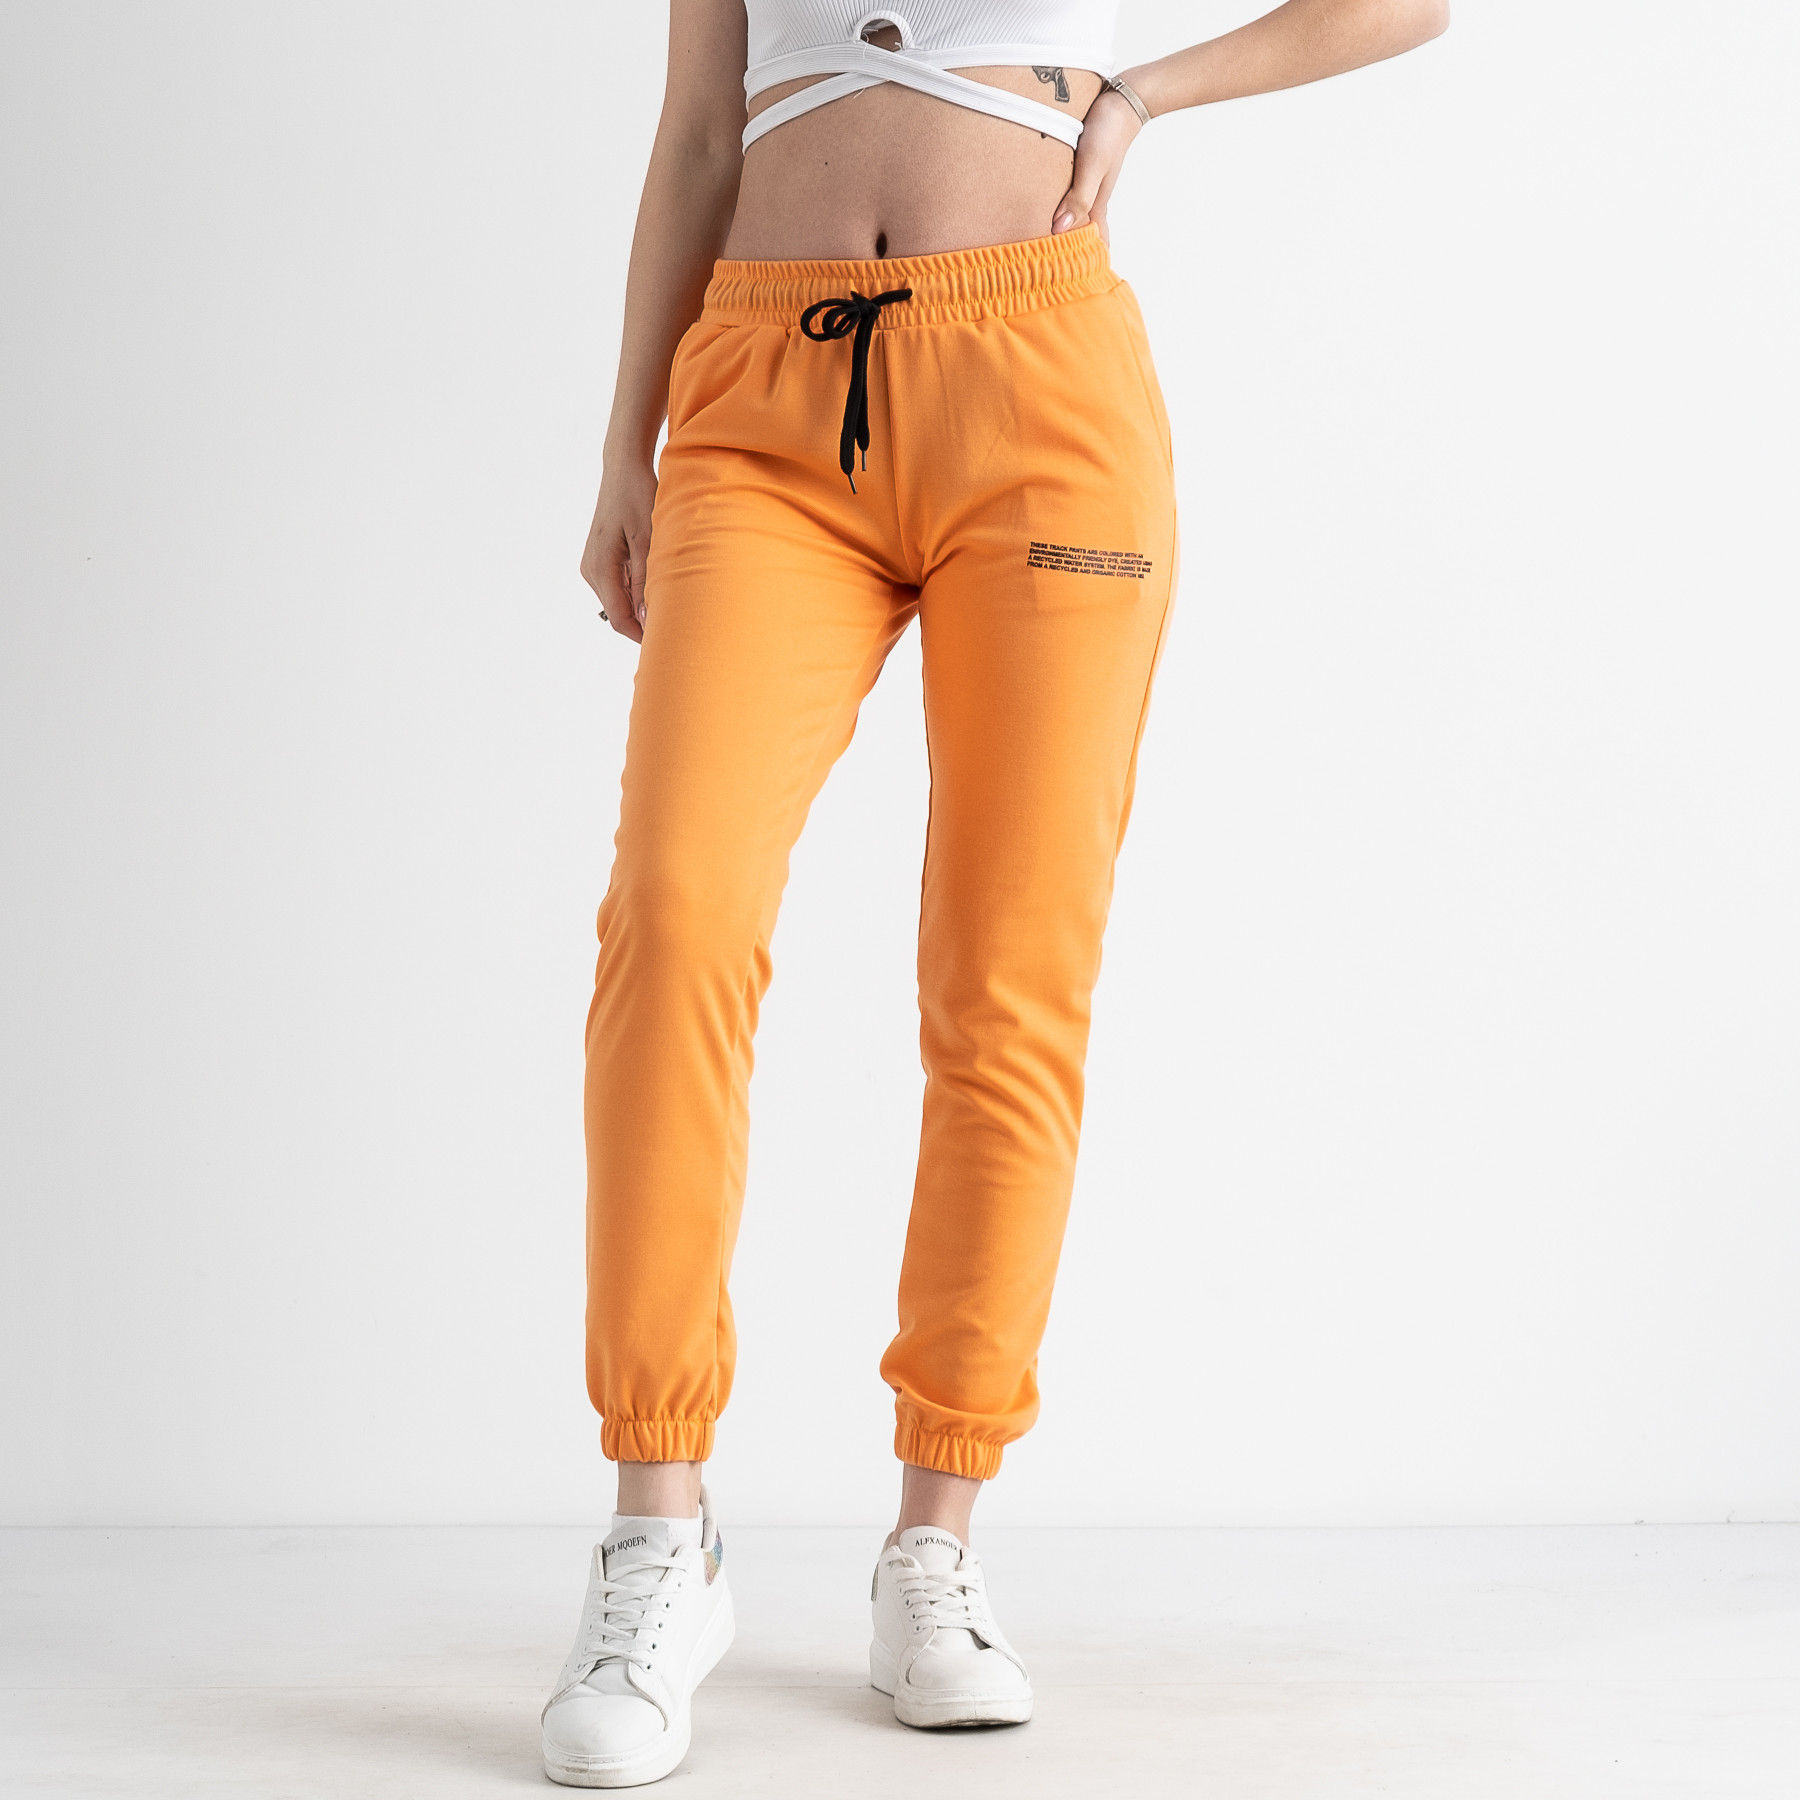 1105-7 ЖЕЛТЫЕ спортивные брюки женские (4 ед размеры: S.M.L.XL)